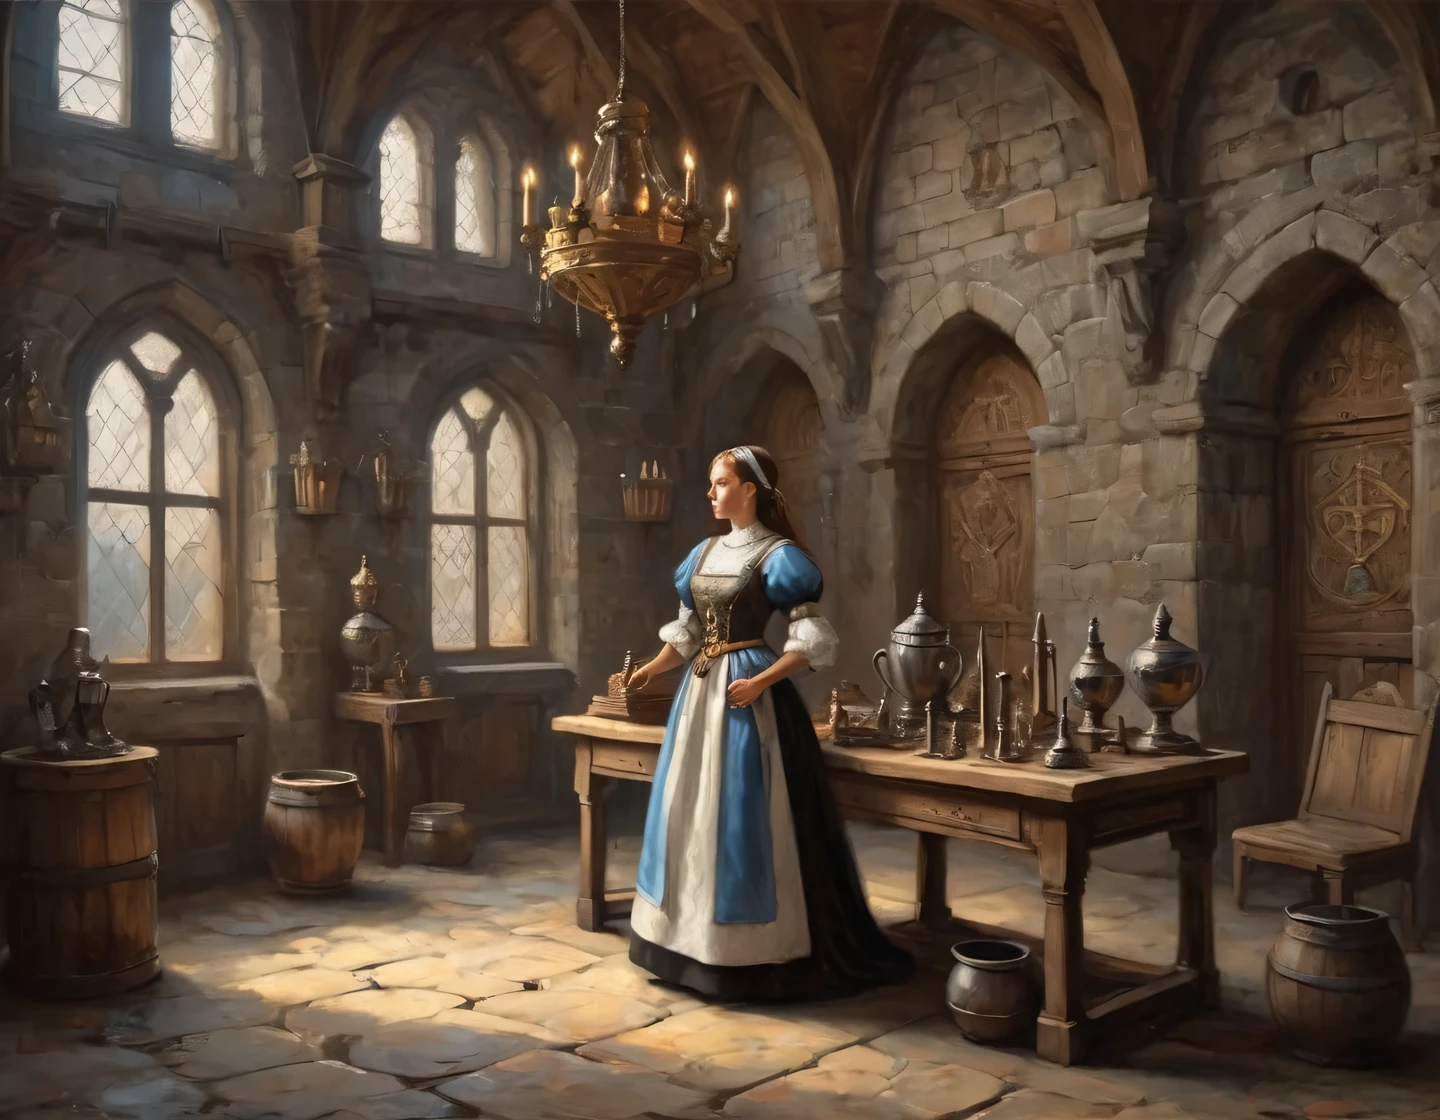 صورة فوتوغرافية قديمة, فتاة سايبورغ ترتدي زي خادمة تقوم بالبناء في قاعة قلعة من العصور الوسطى, المفروشات في العصور الوسطى, الجوائز والأسلحة على الجدران, شعارات النبالة, حقيقي